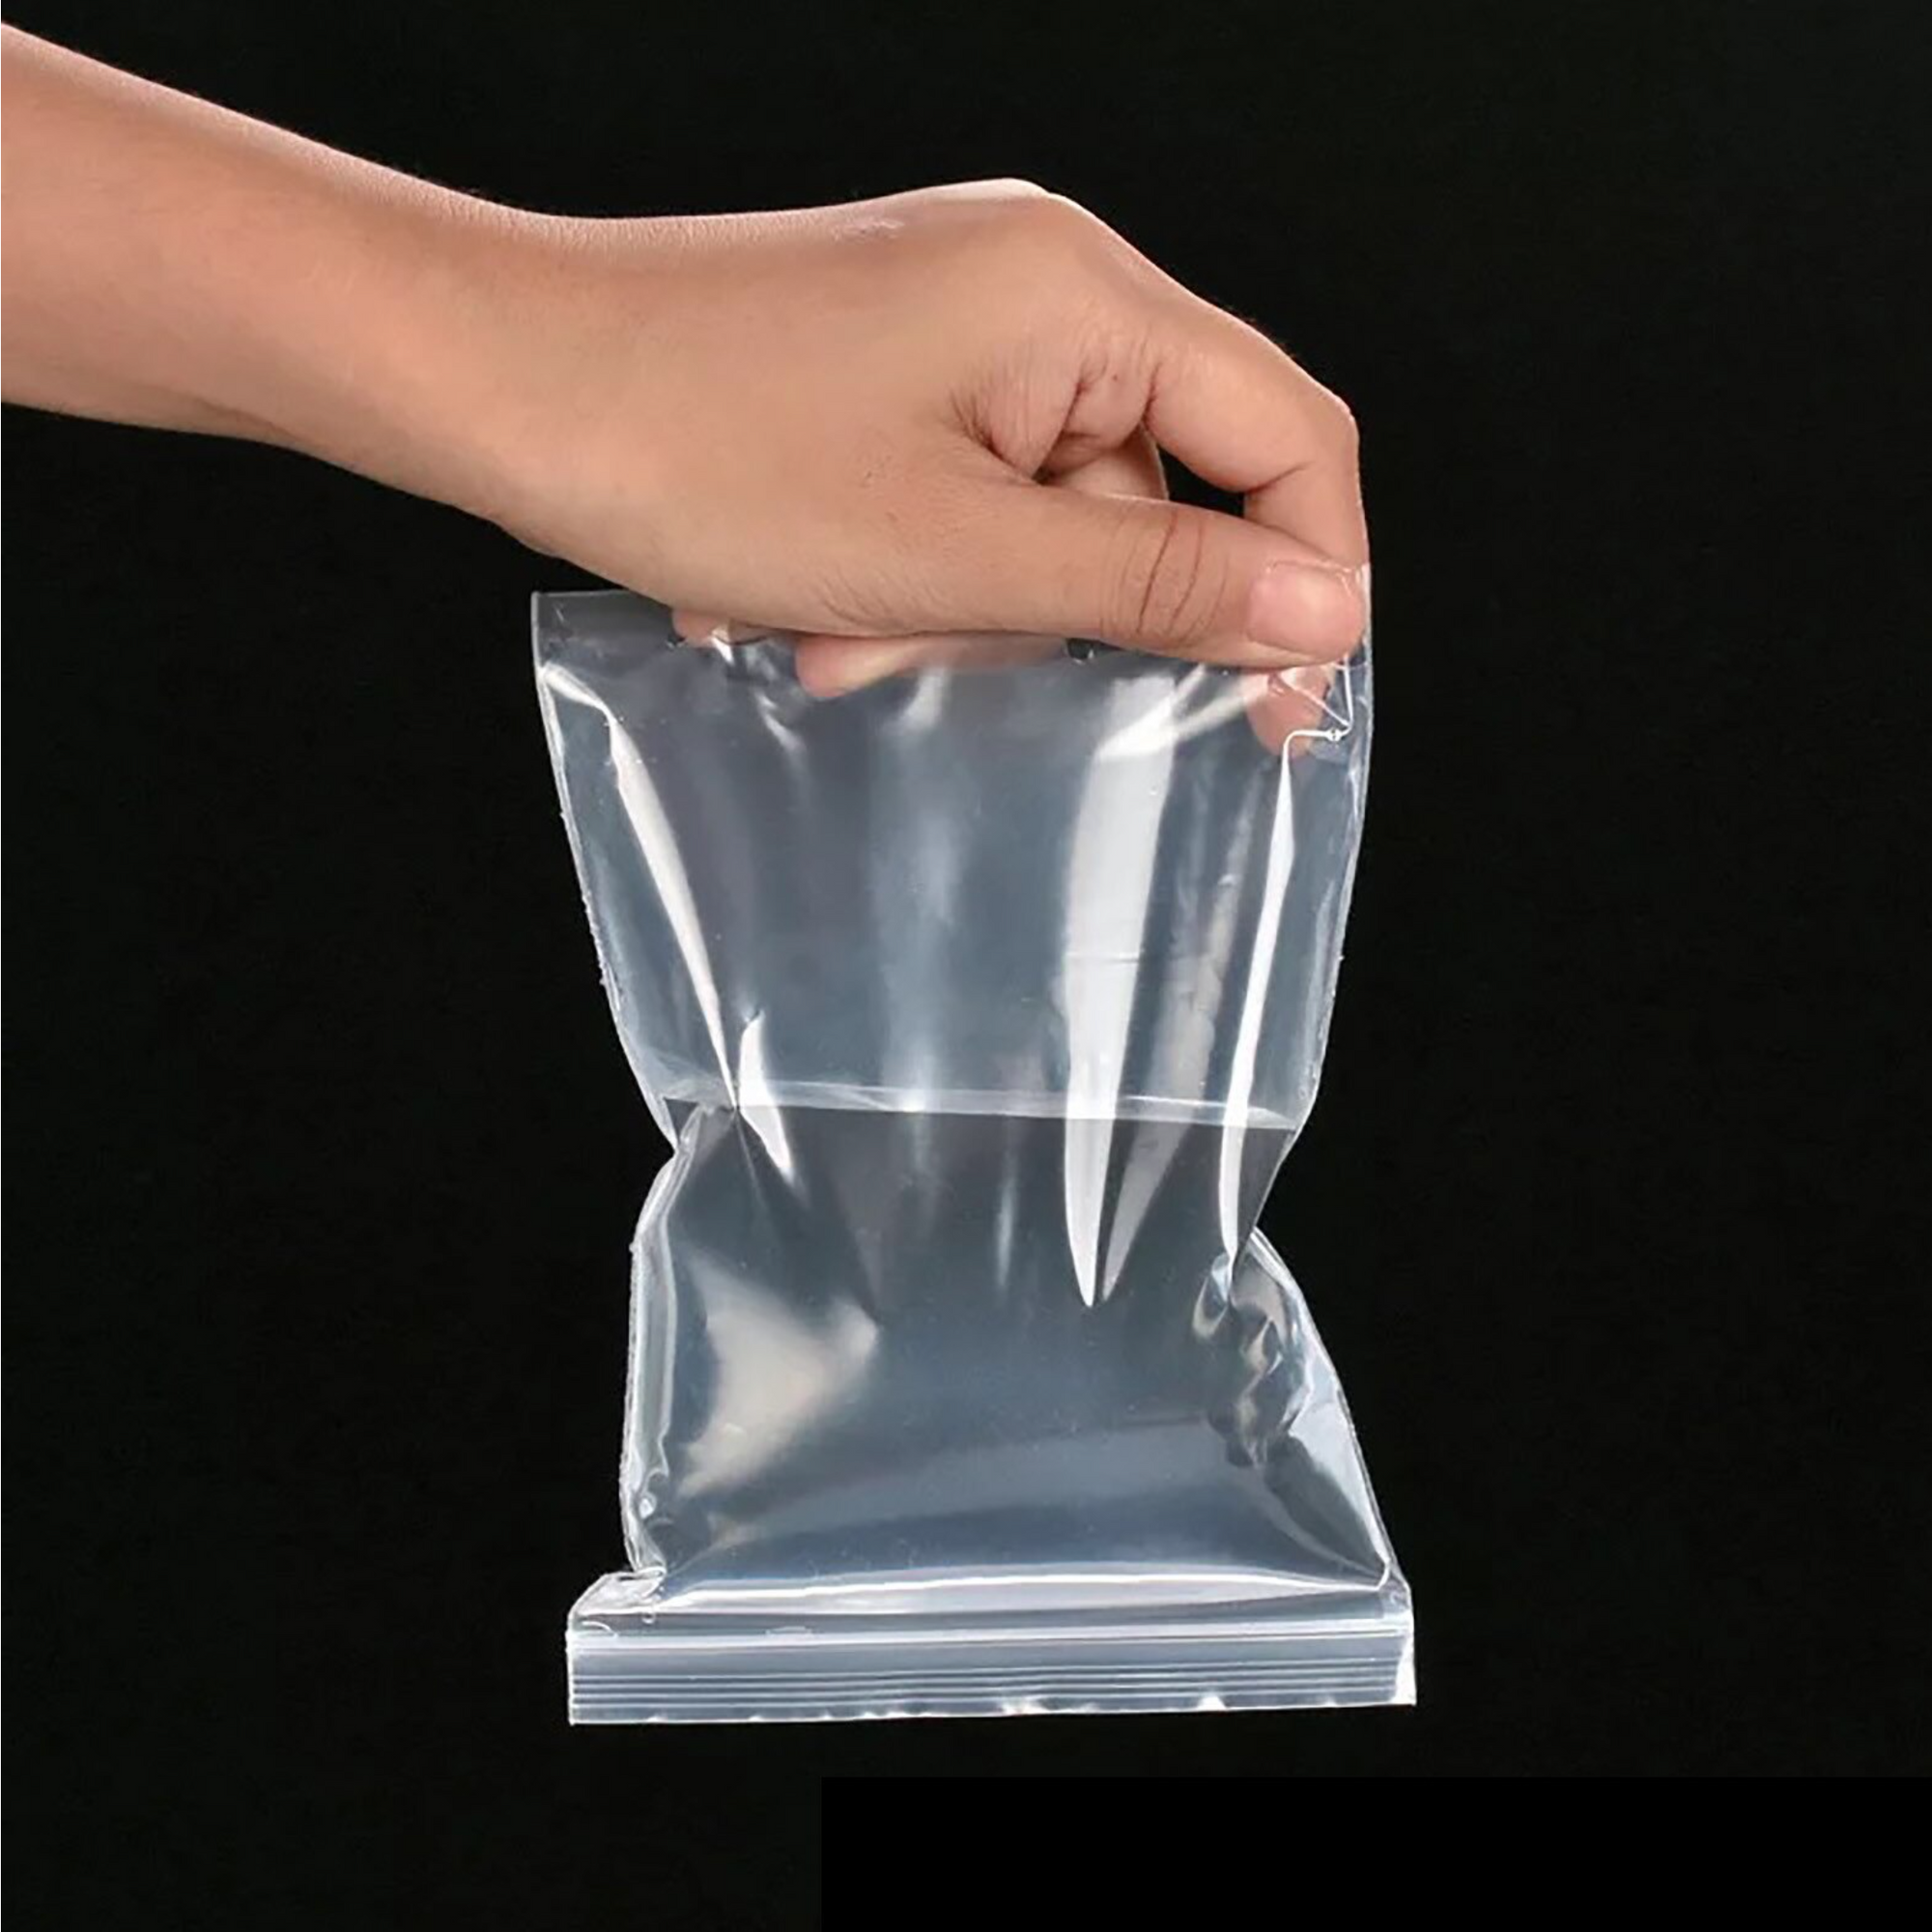 Pochon plastique - Emballage Moula